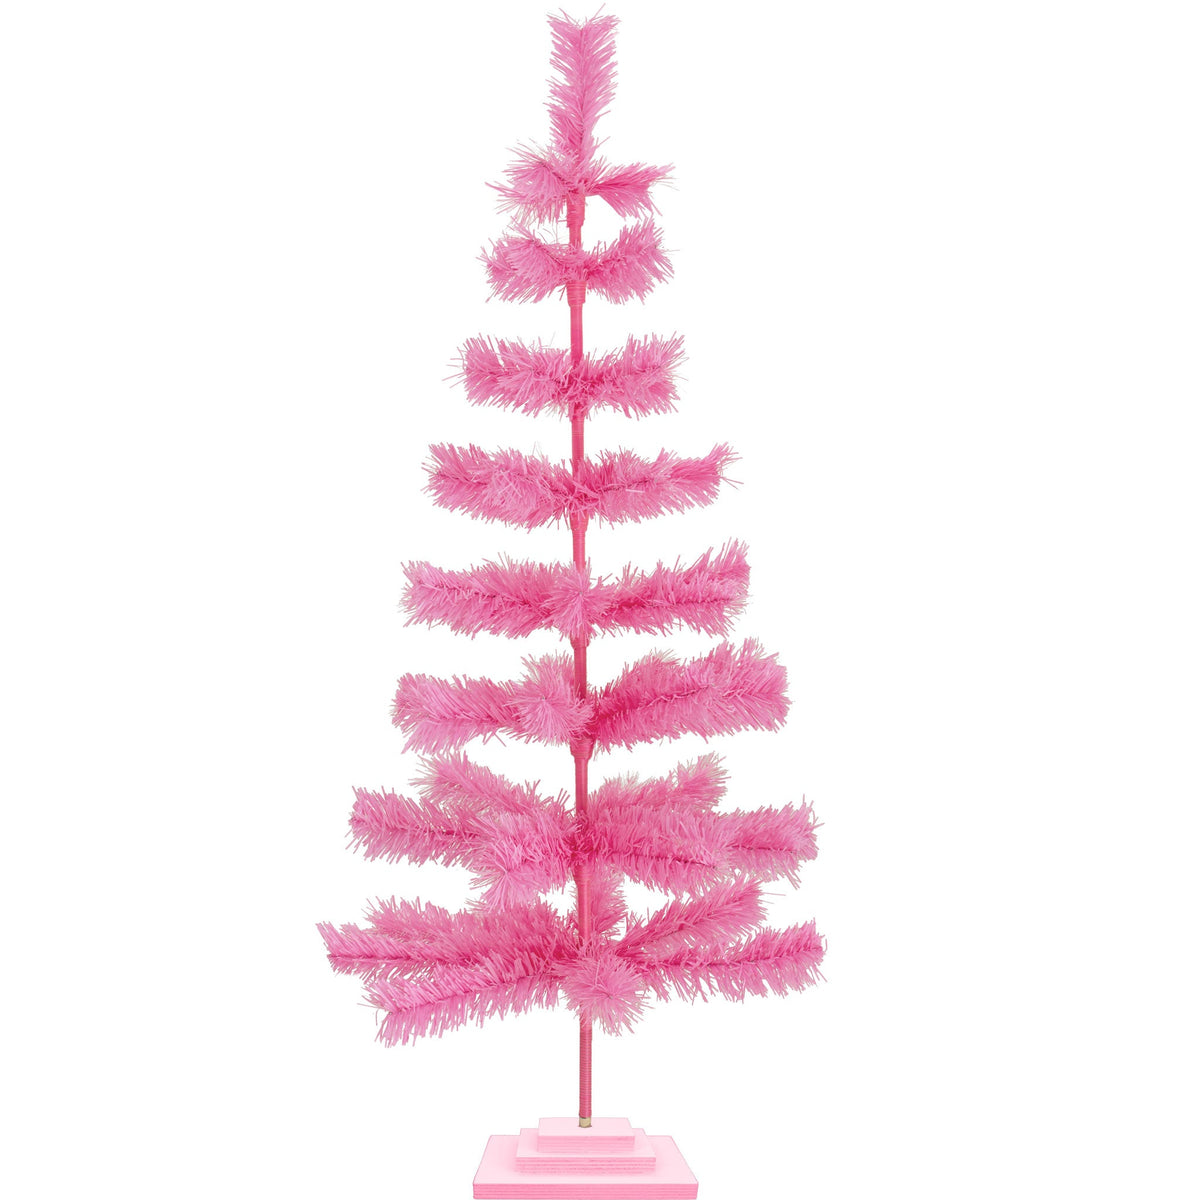 4 Foot Tall Pink Tinsel Christmas Trees on sale at Leedisplay.com.